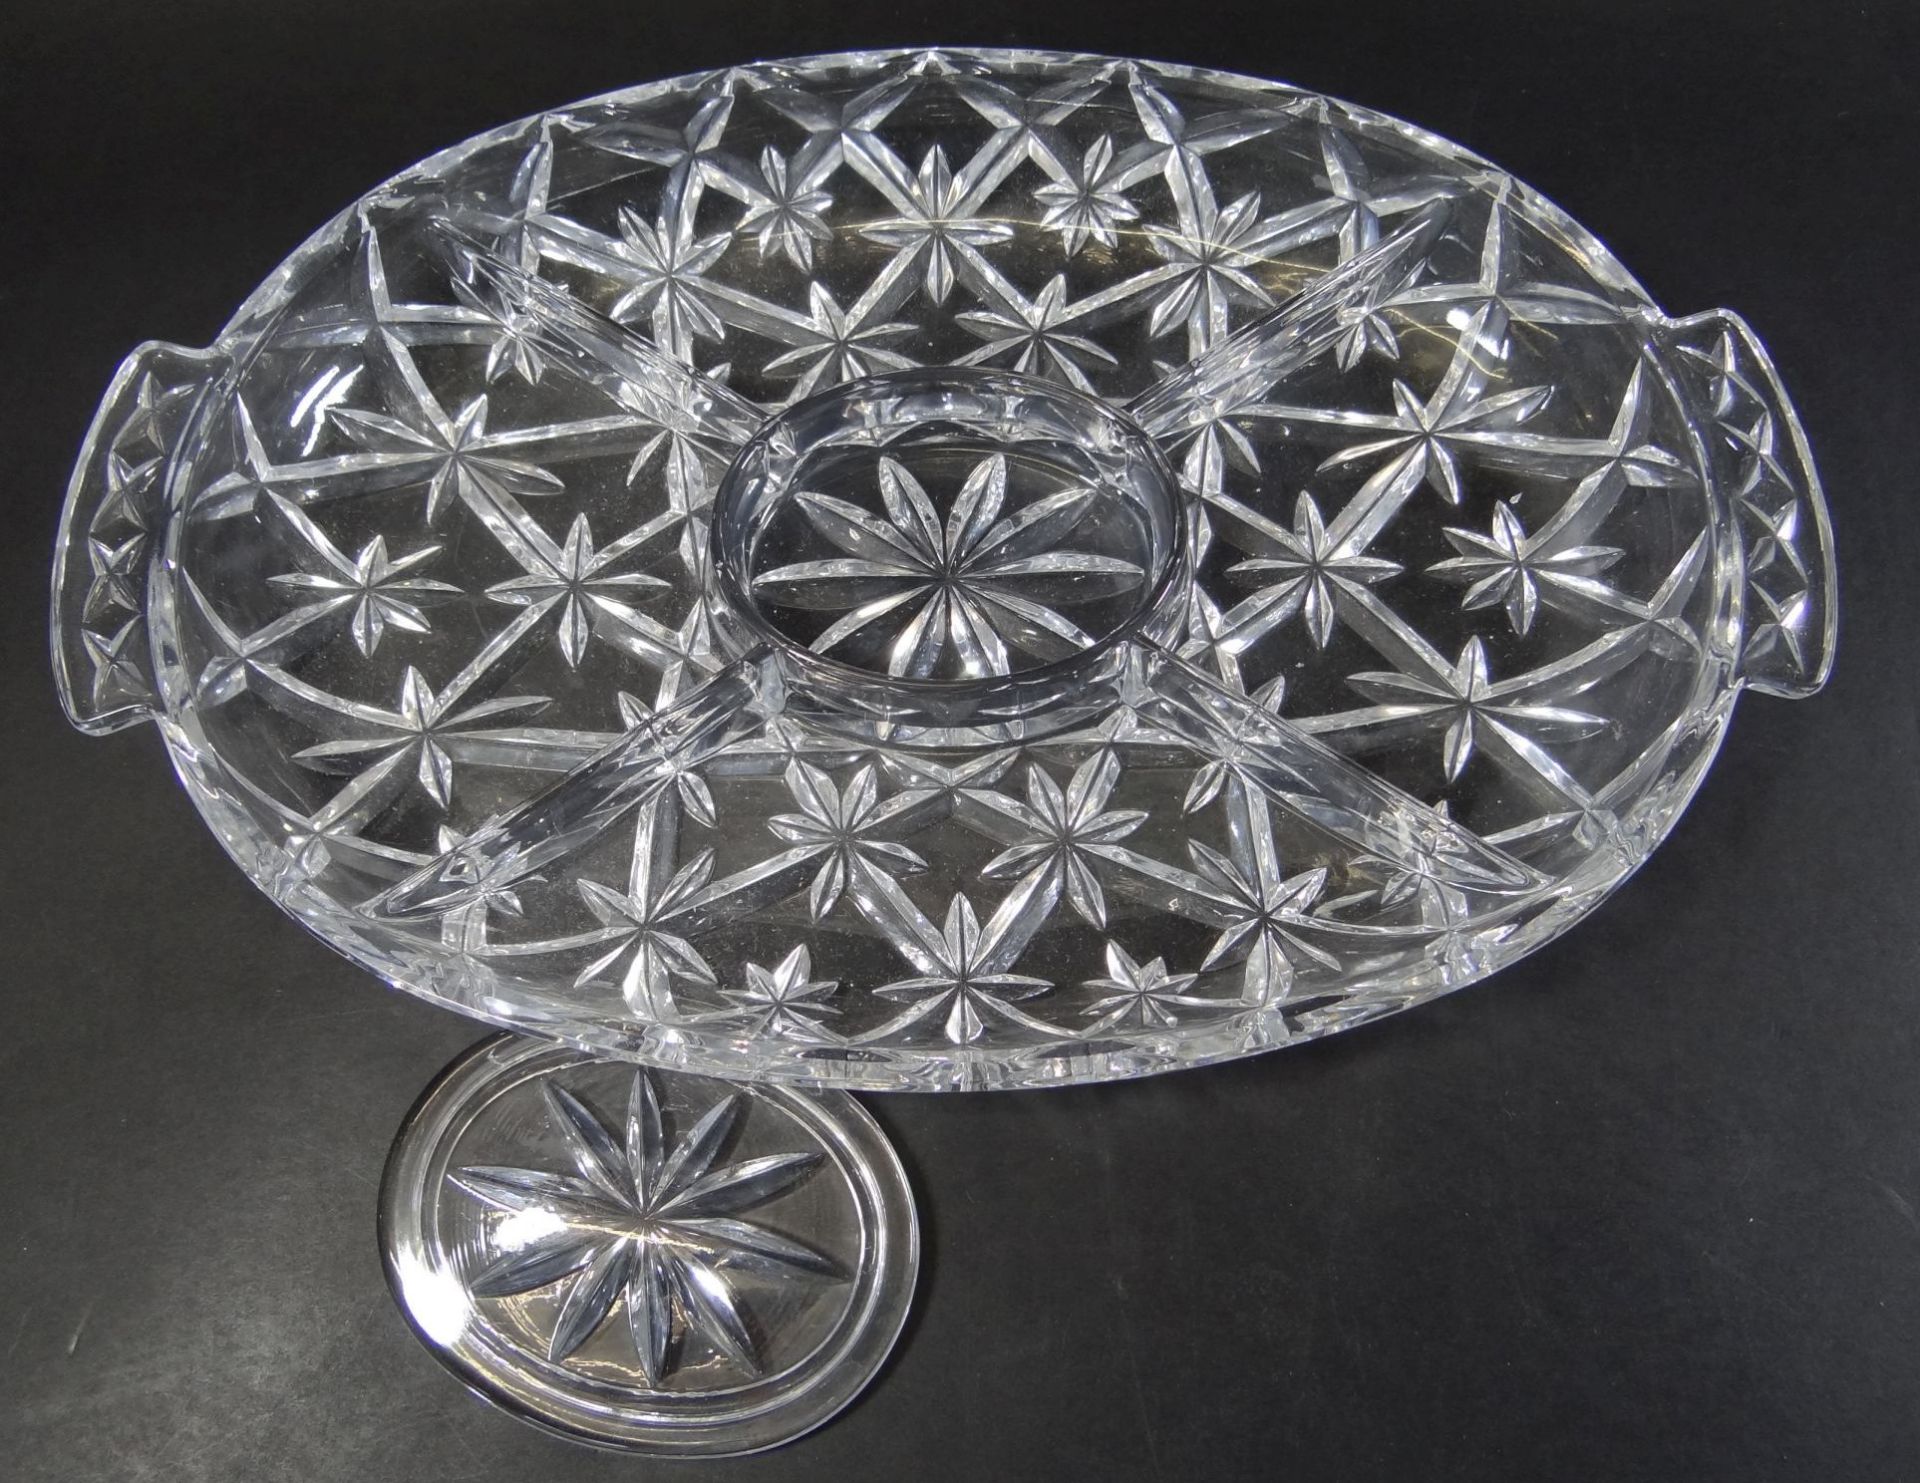 grosses, schweres ovales Kristall-Kabarette, mittig mit Deckel, 35x23 cm - Bild 3 aus 4